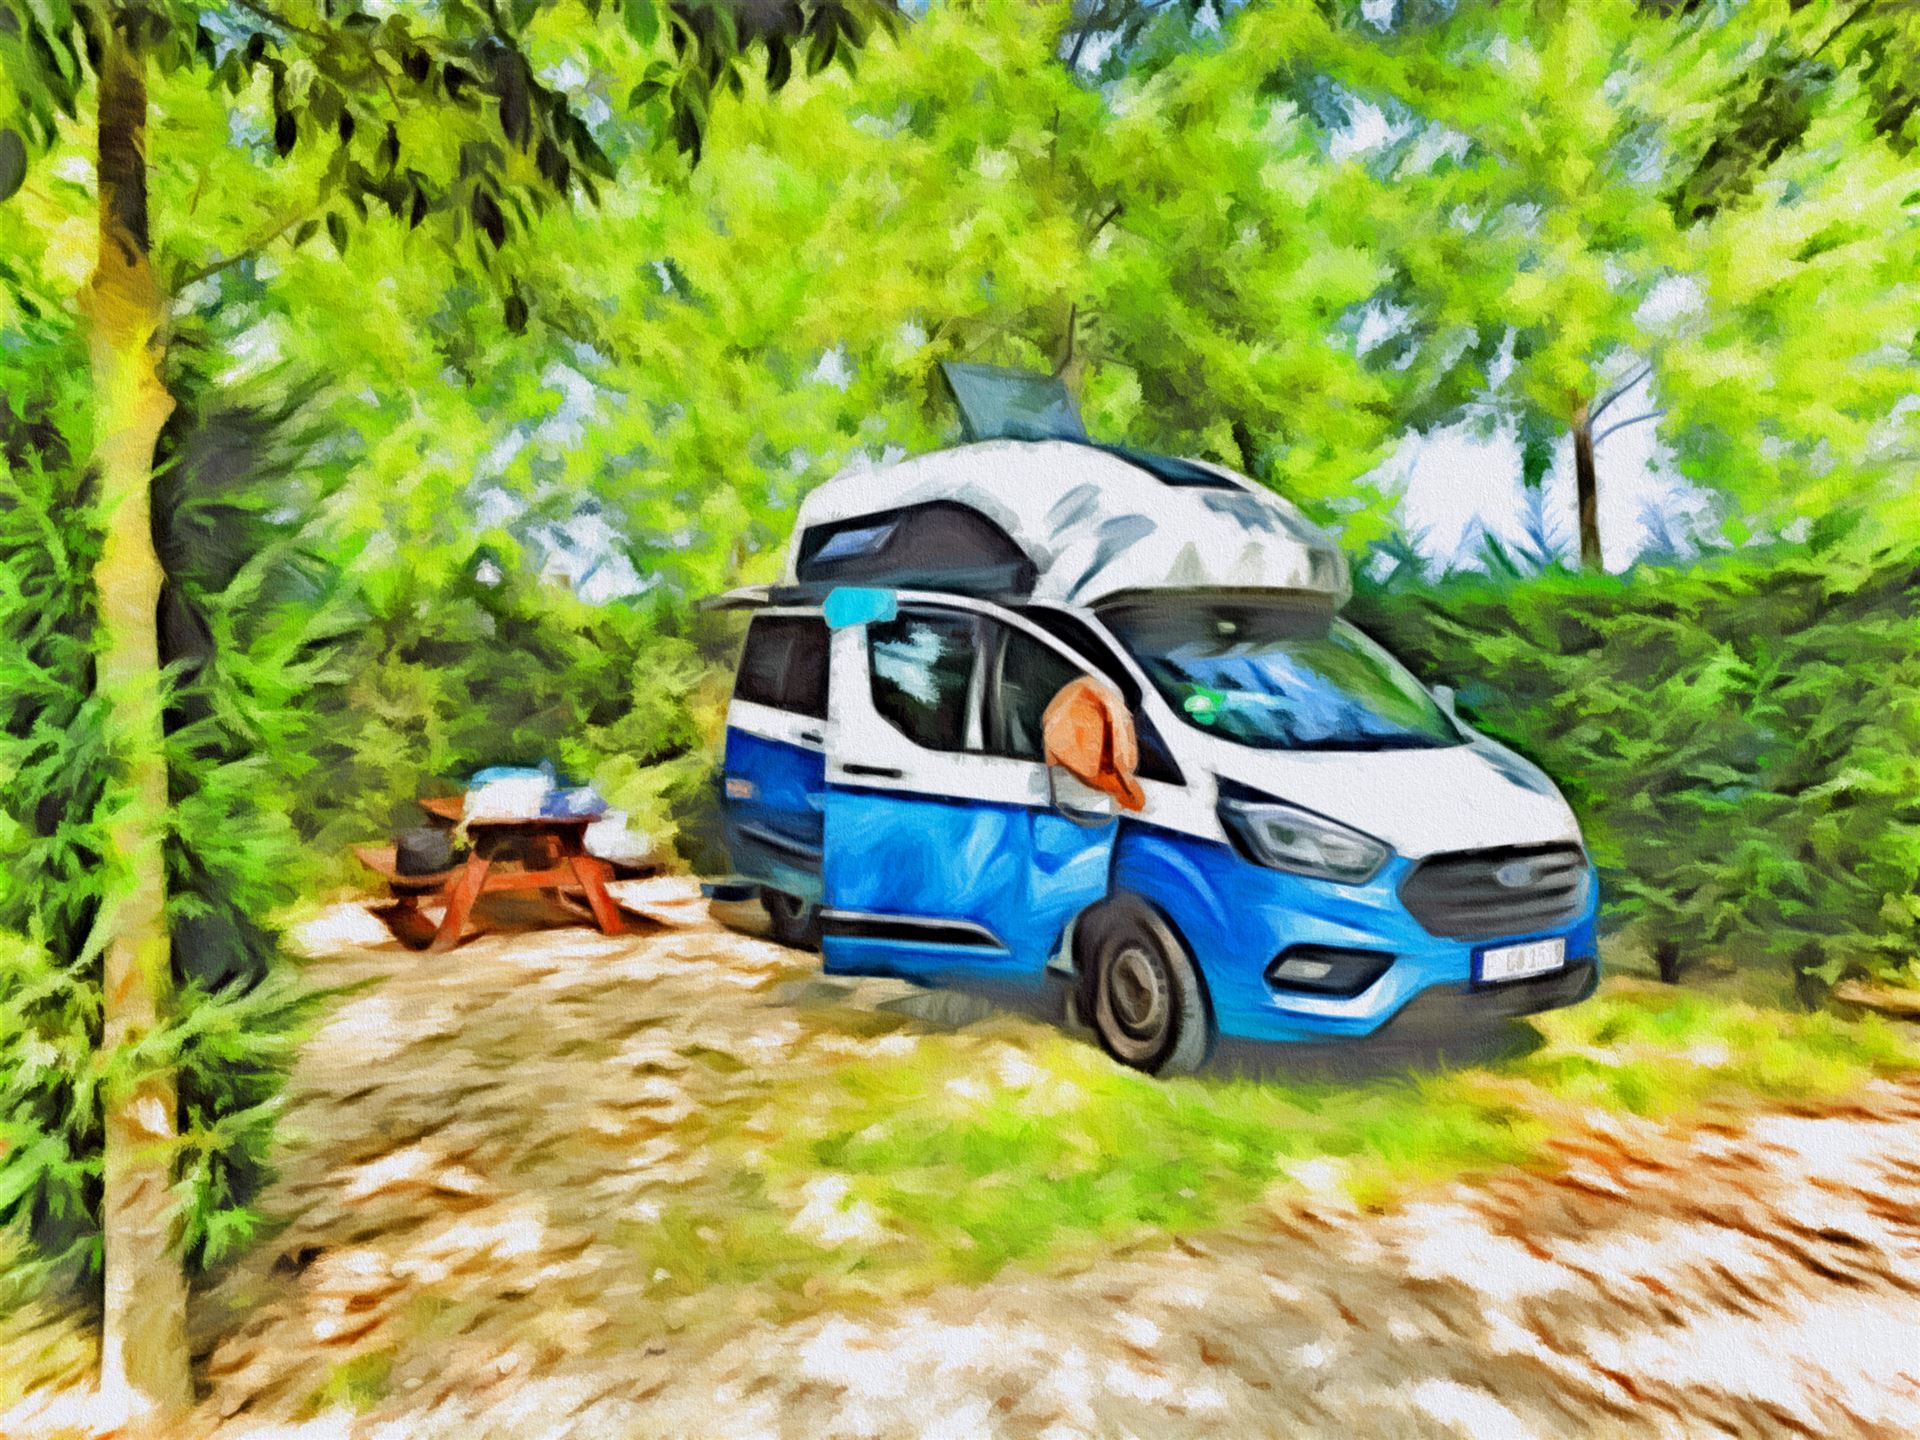 © autormobil.de | Camping mit dem Ford Nugget – Eine eigene Parzelle auf dem Campingplatz